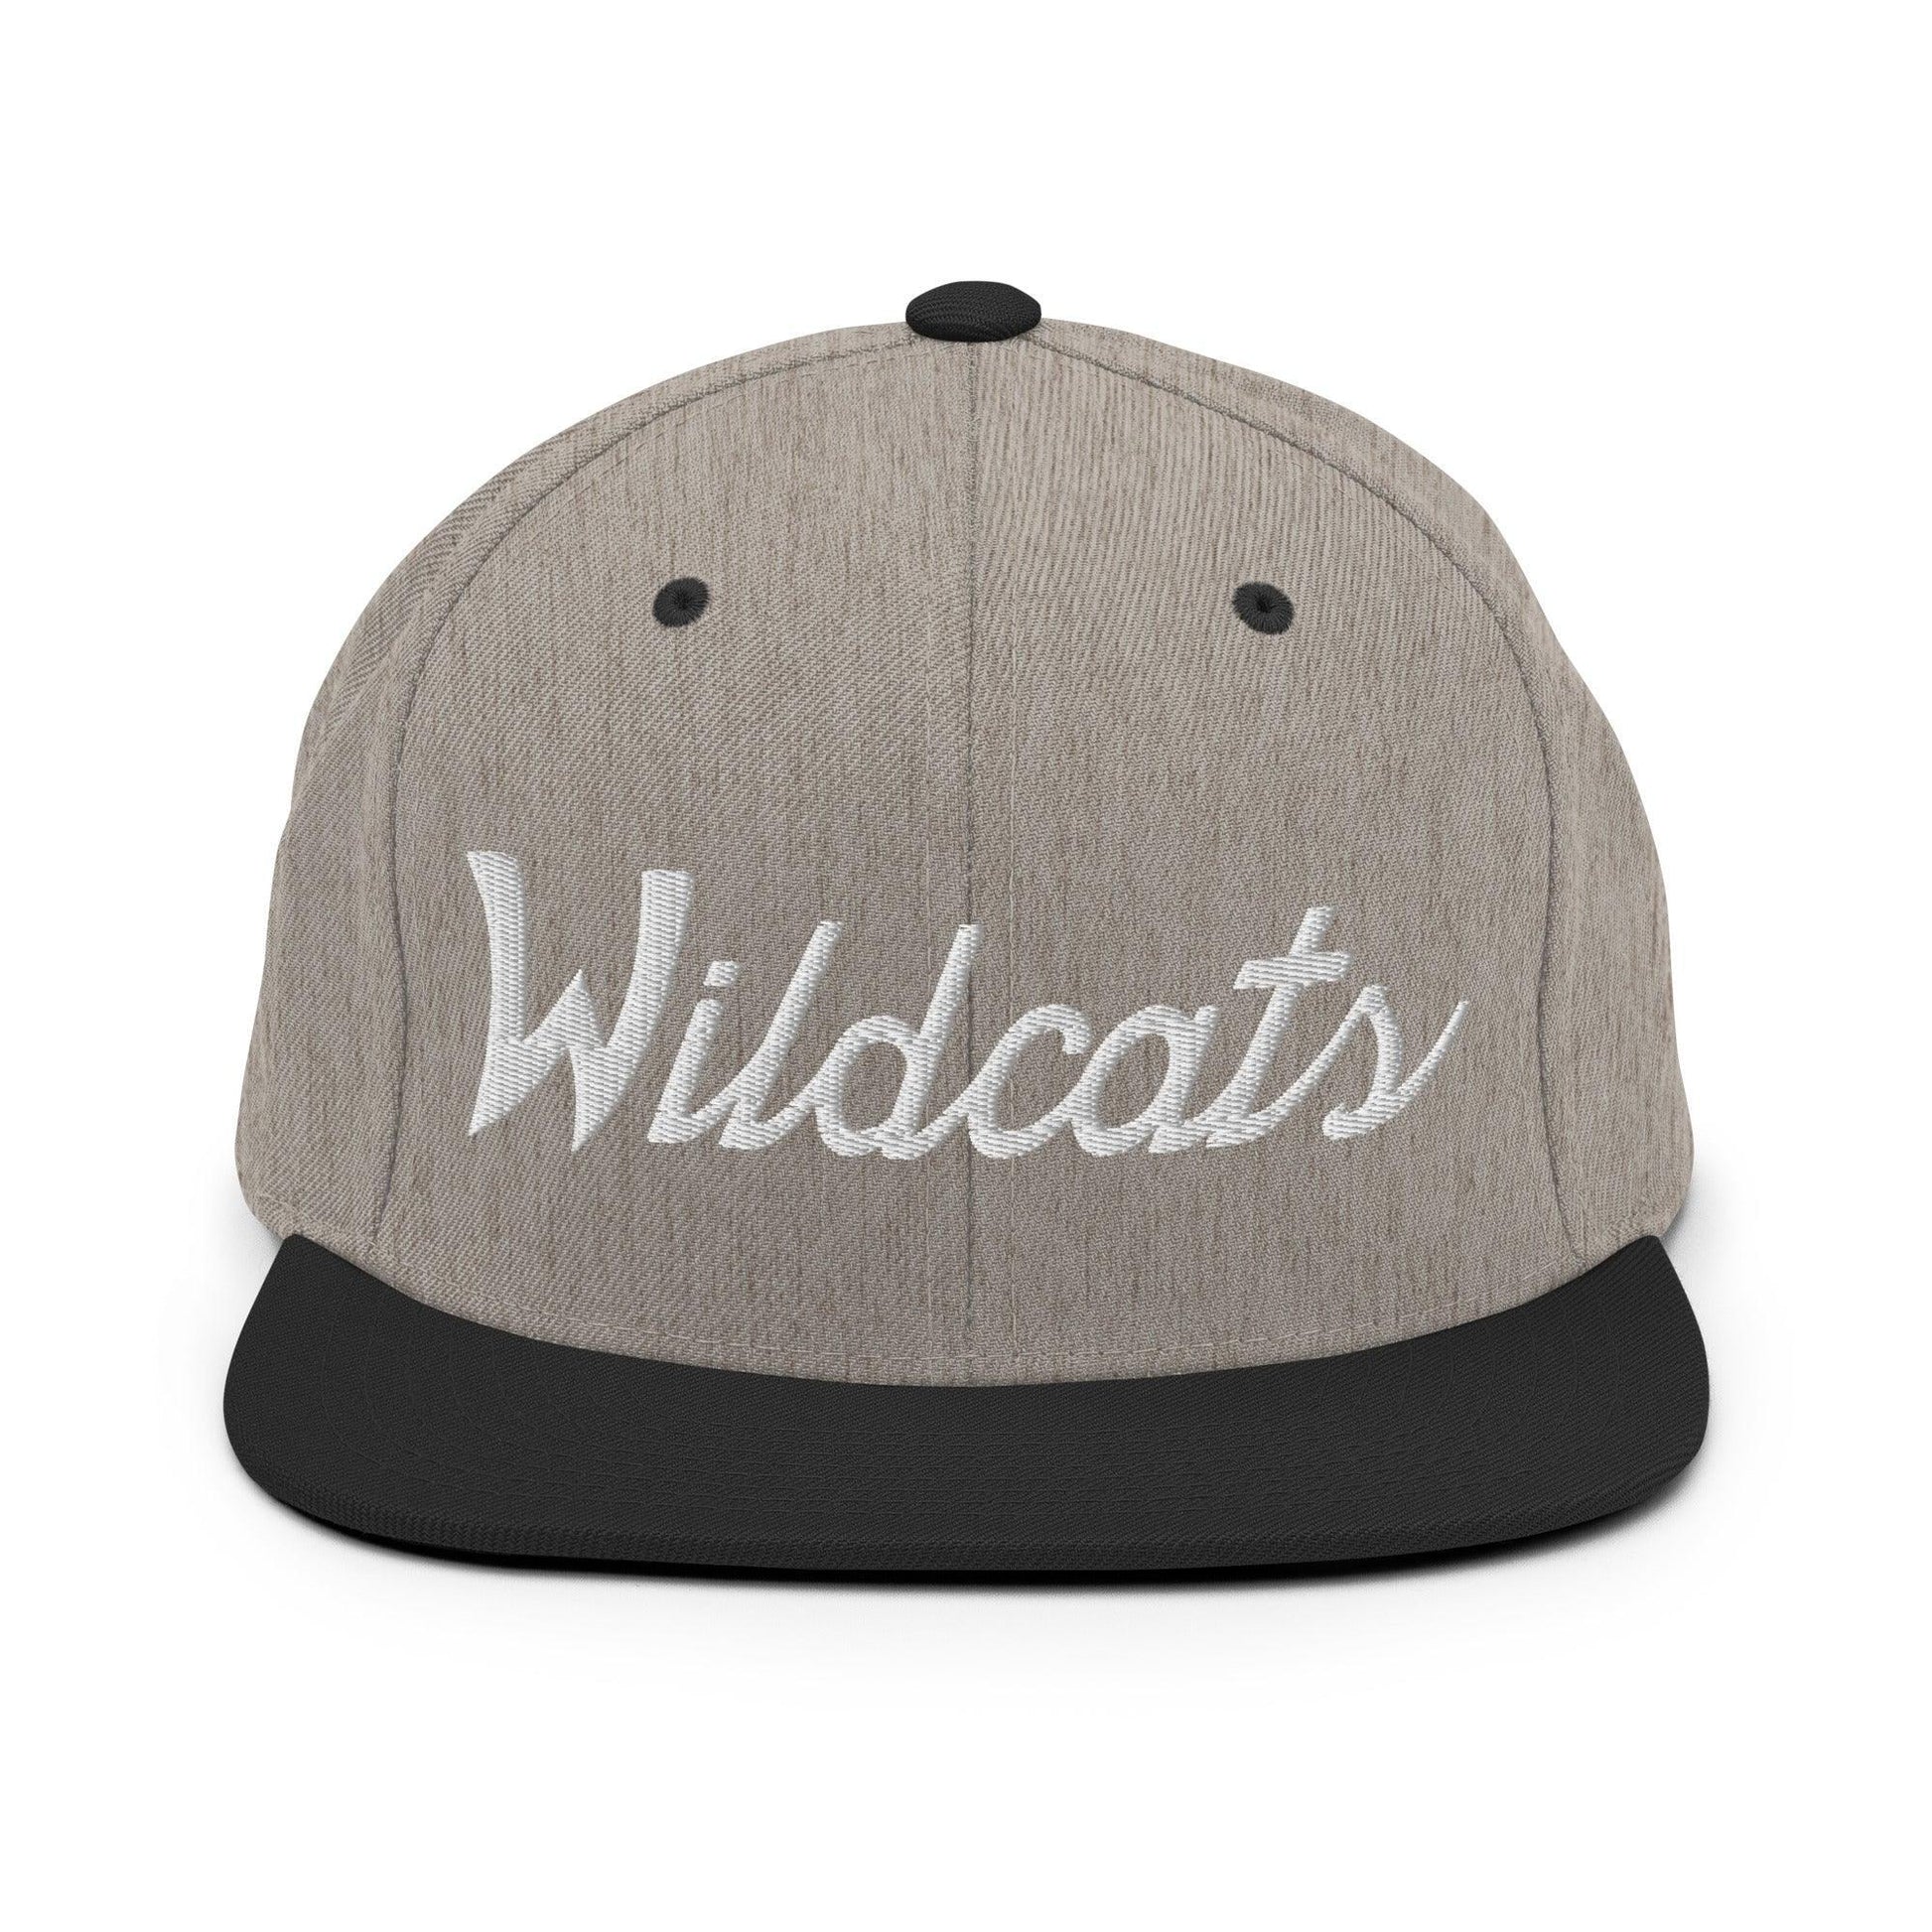 Wildcats School Mascot Script Snapback Hat Heather/Black